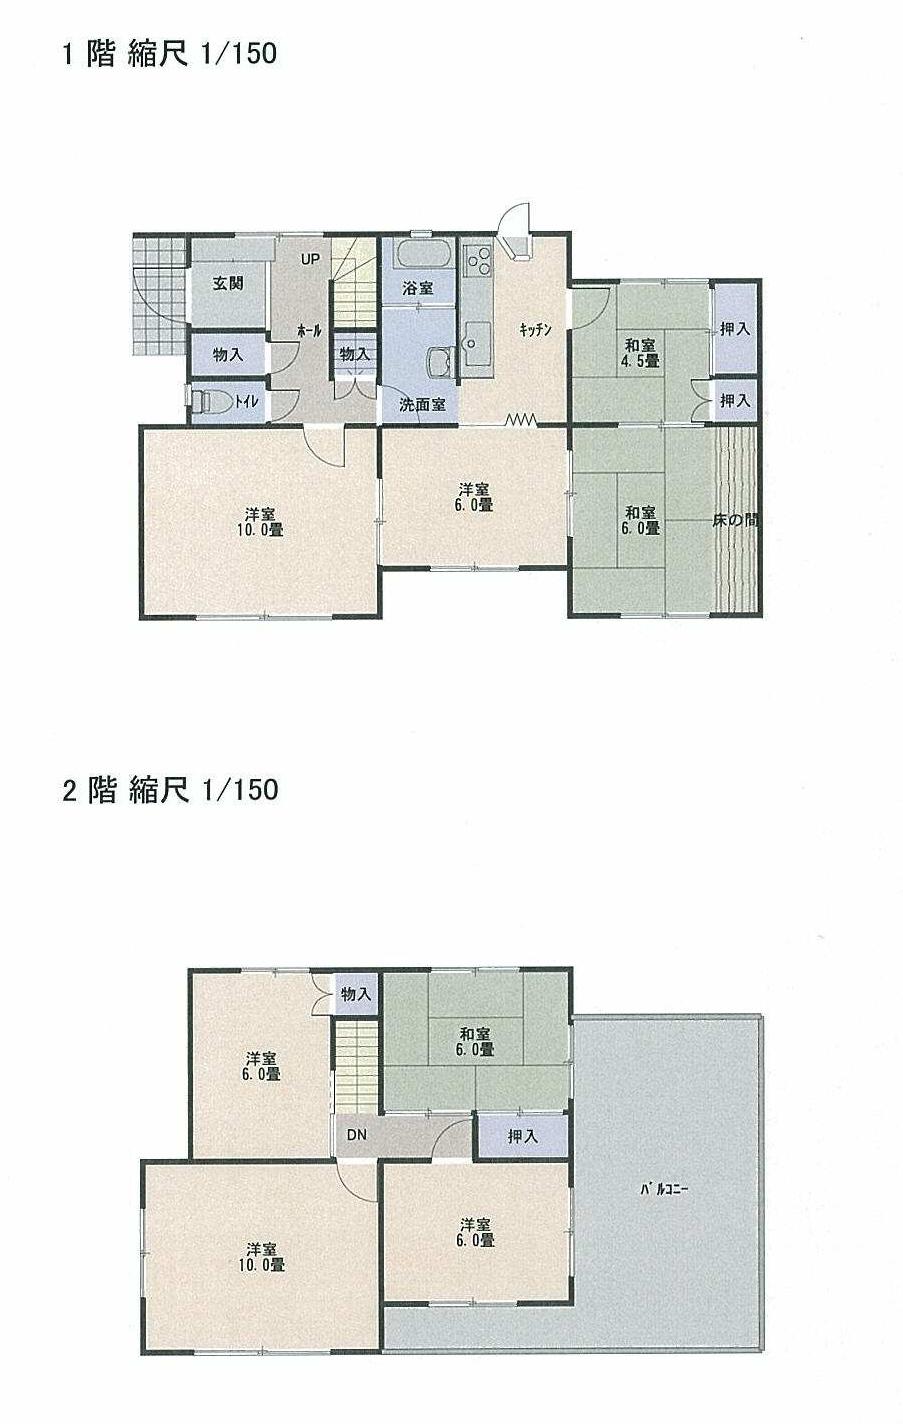 Floor plan. 22 million yen, 7DK, Land area 507.67 sq m , Building area 129.17 sq m